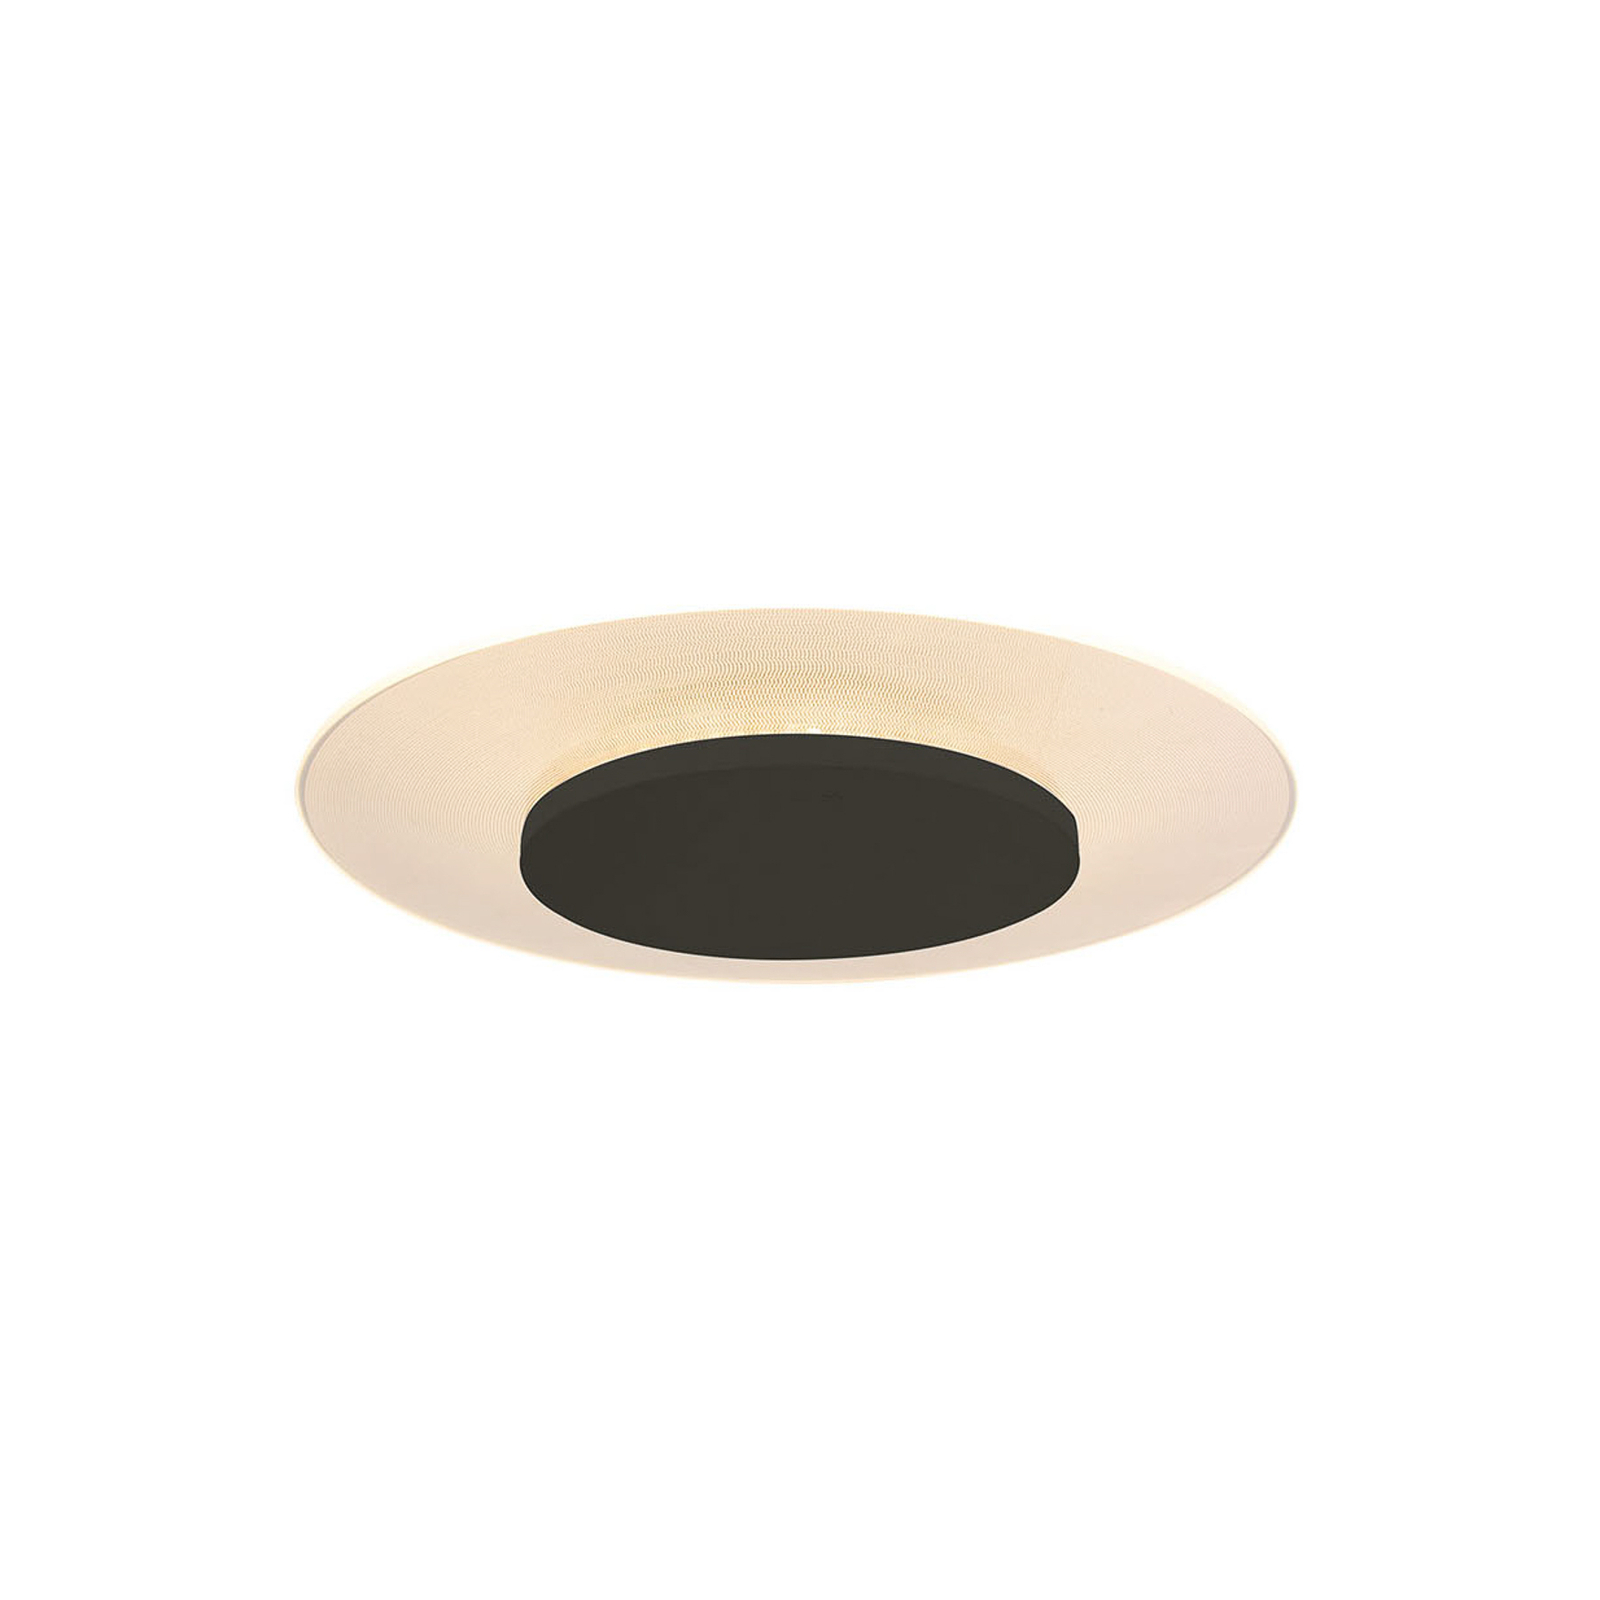 LED stropné svietidlo Lido, čierne, Ø 28 cm